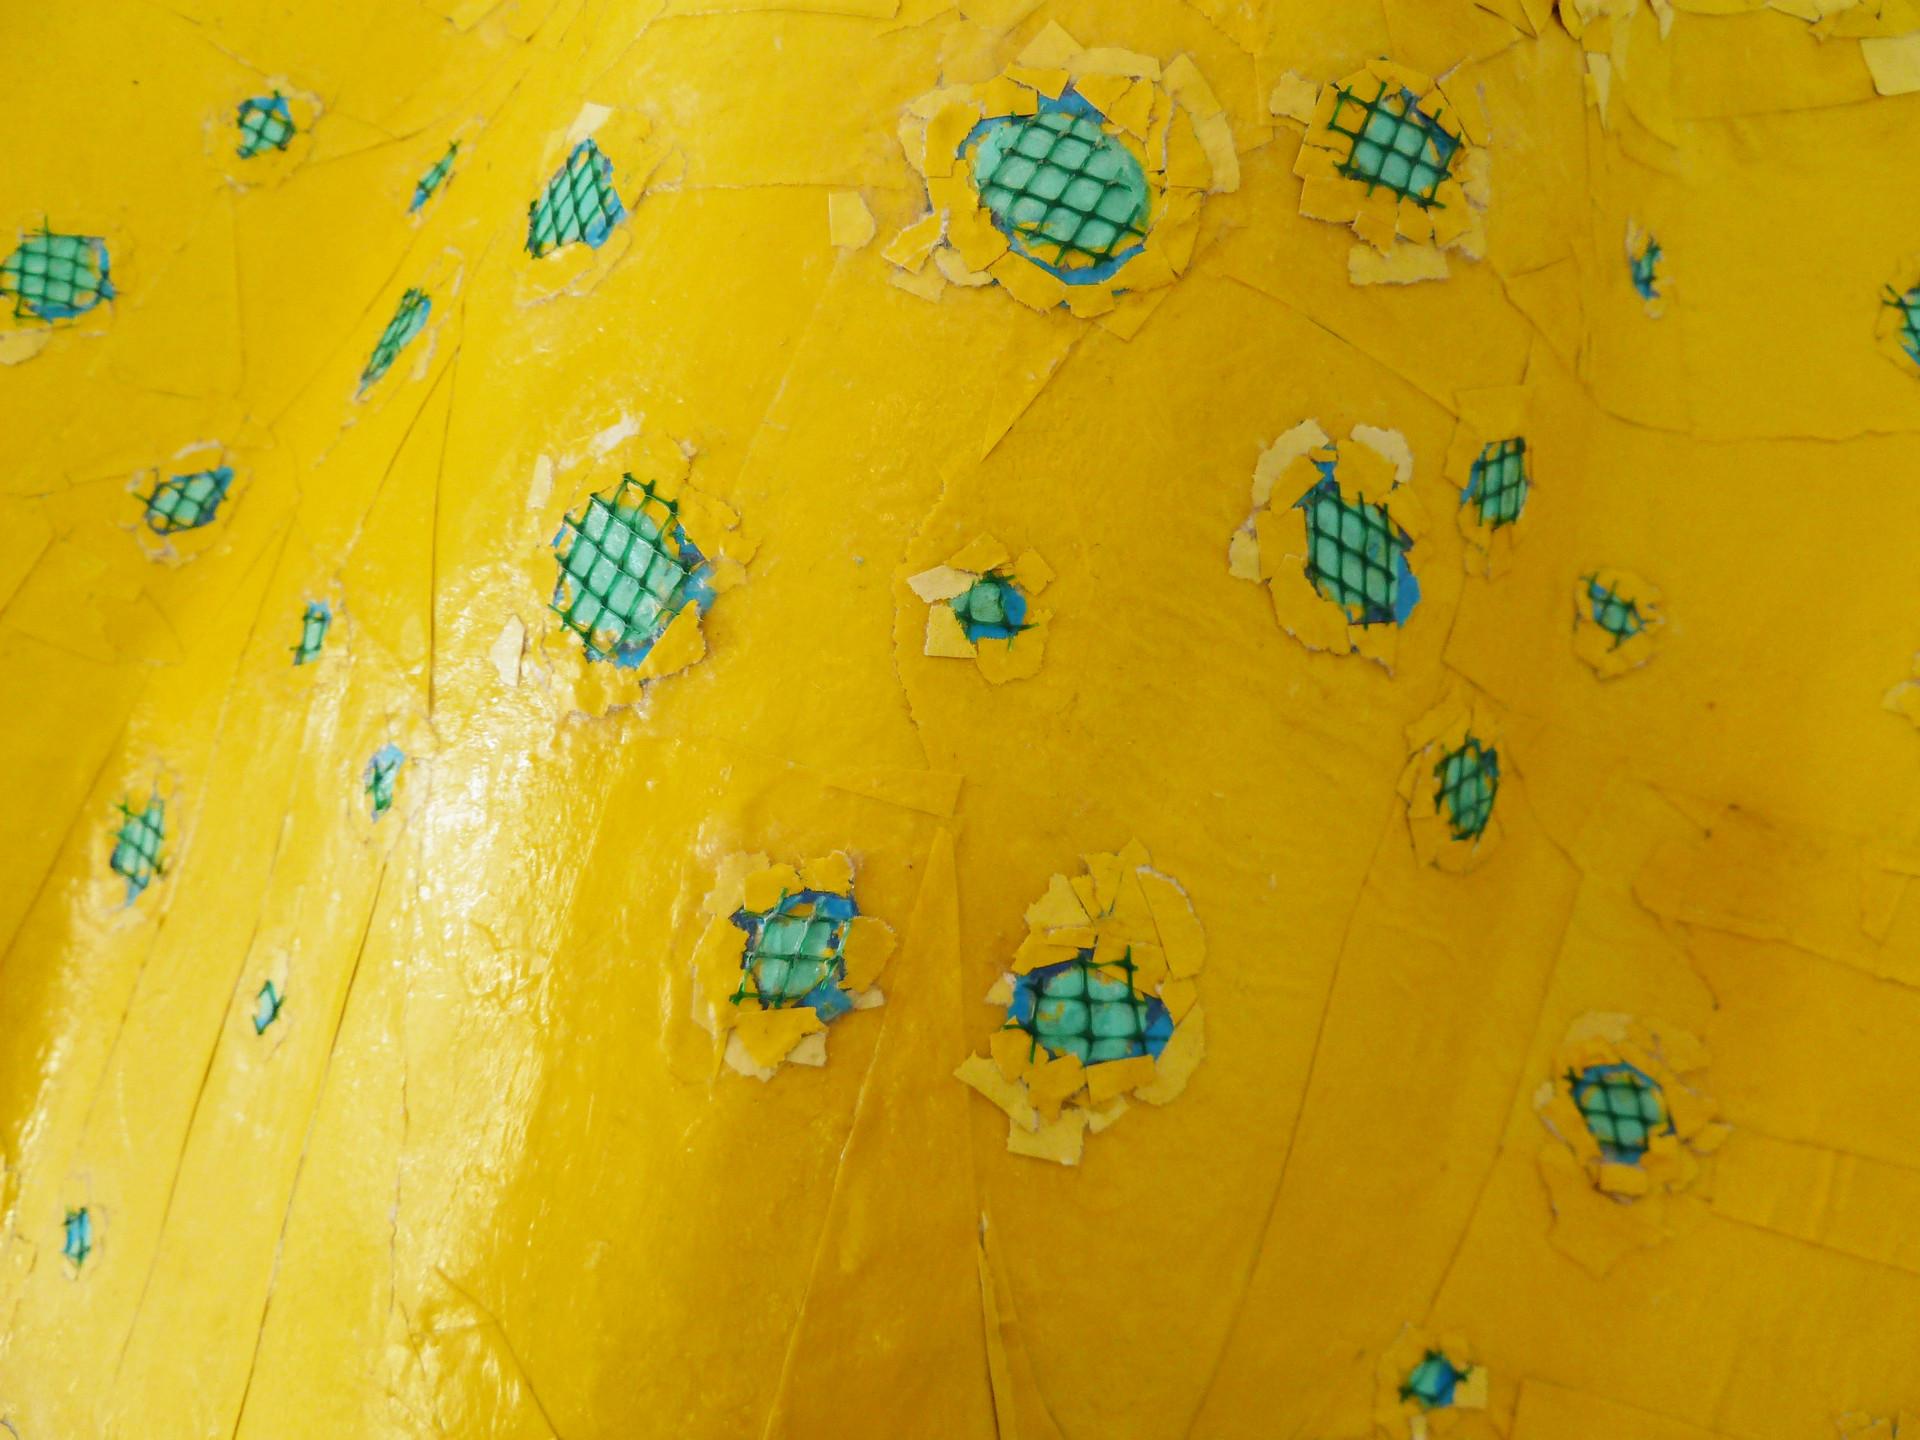 Ray B - Sculpture contemporaine réalisée avec des matériaux recyclés (jaune et bleu) - Contemporain Mixed Media Art par Yulia Shtern